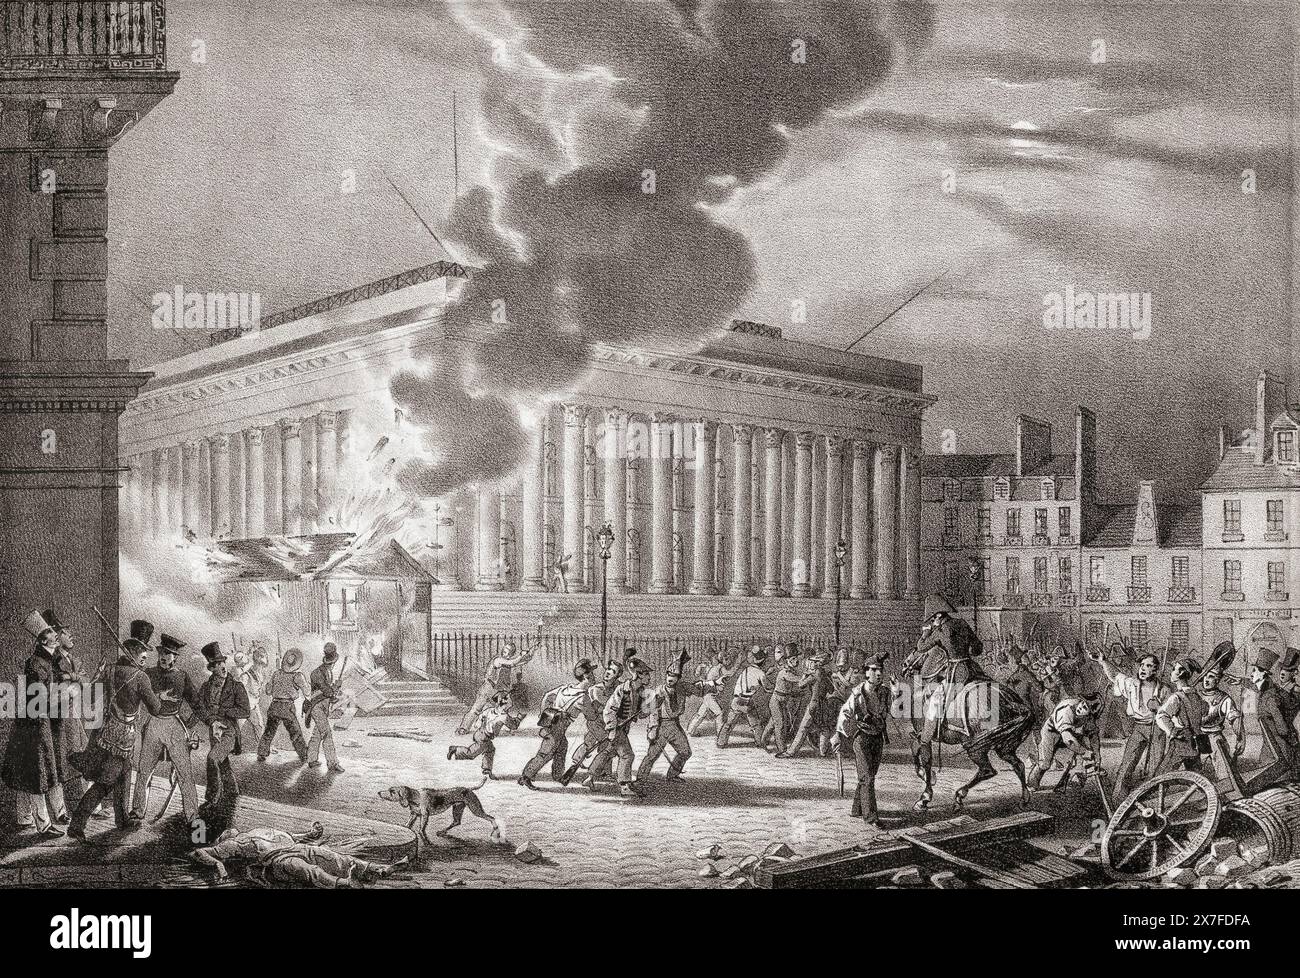 Feuer in der Polizeiwache am Place de la Bourse, Paris, 1830, während der Französischen Revolution von 1830, alias Julirevolution, II. Französische Revolution oder Trois Glorieuses, eine zweite Französische Revolution nach der ersten im Jahr 1789. Nach einem Druck aus dem 19. Jahrhundert. Stockfoto